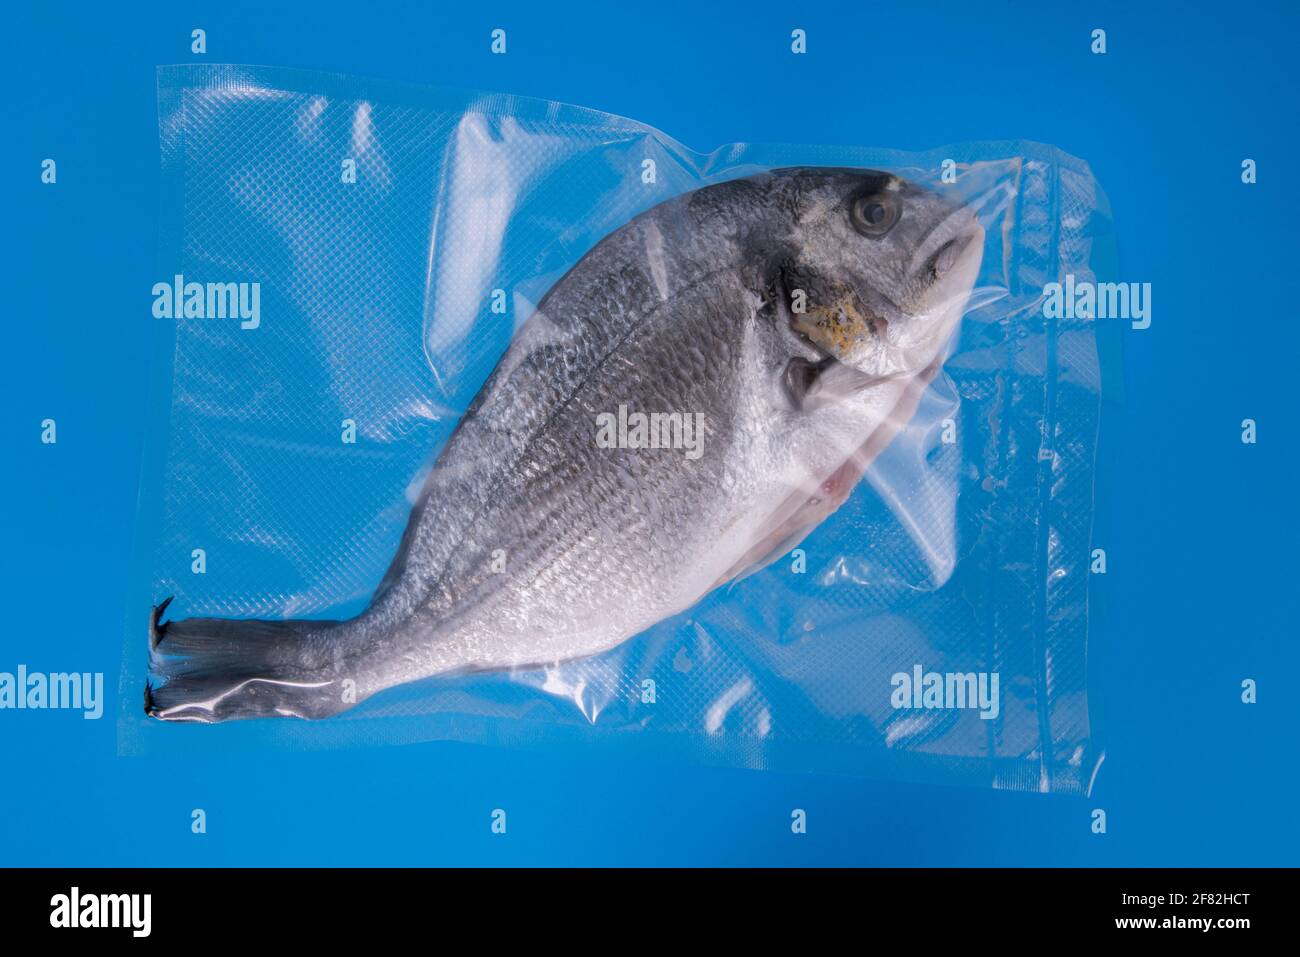 Orata o Dorada pesce sotto vuoto sigillato per cottura sous vide, isolato su sfondo blu Foto Stock